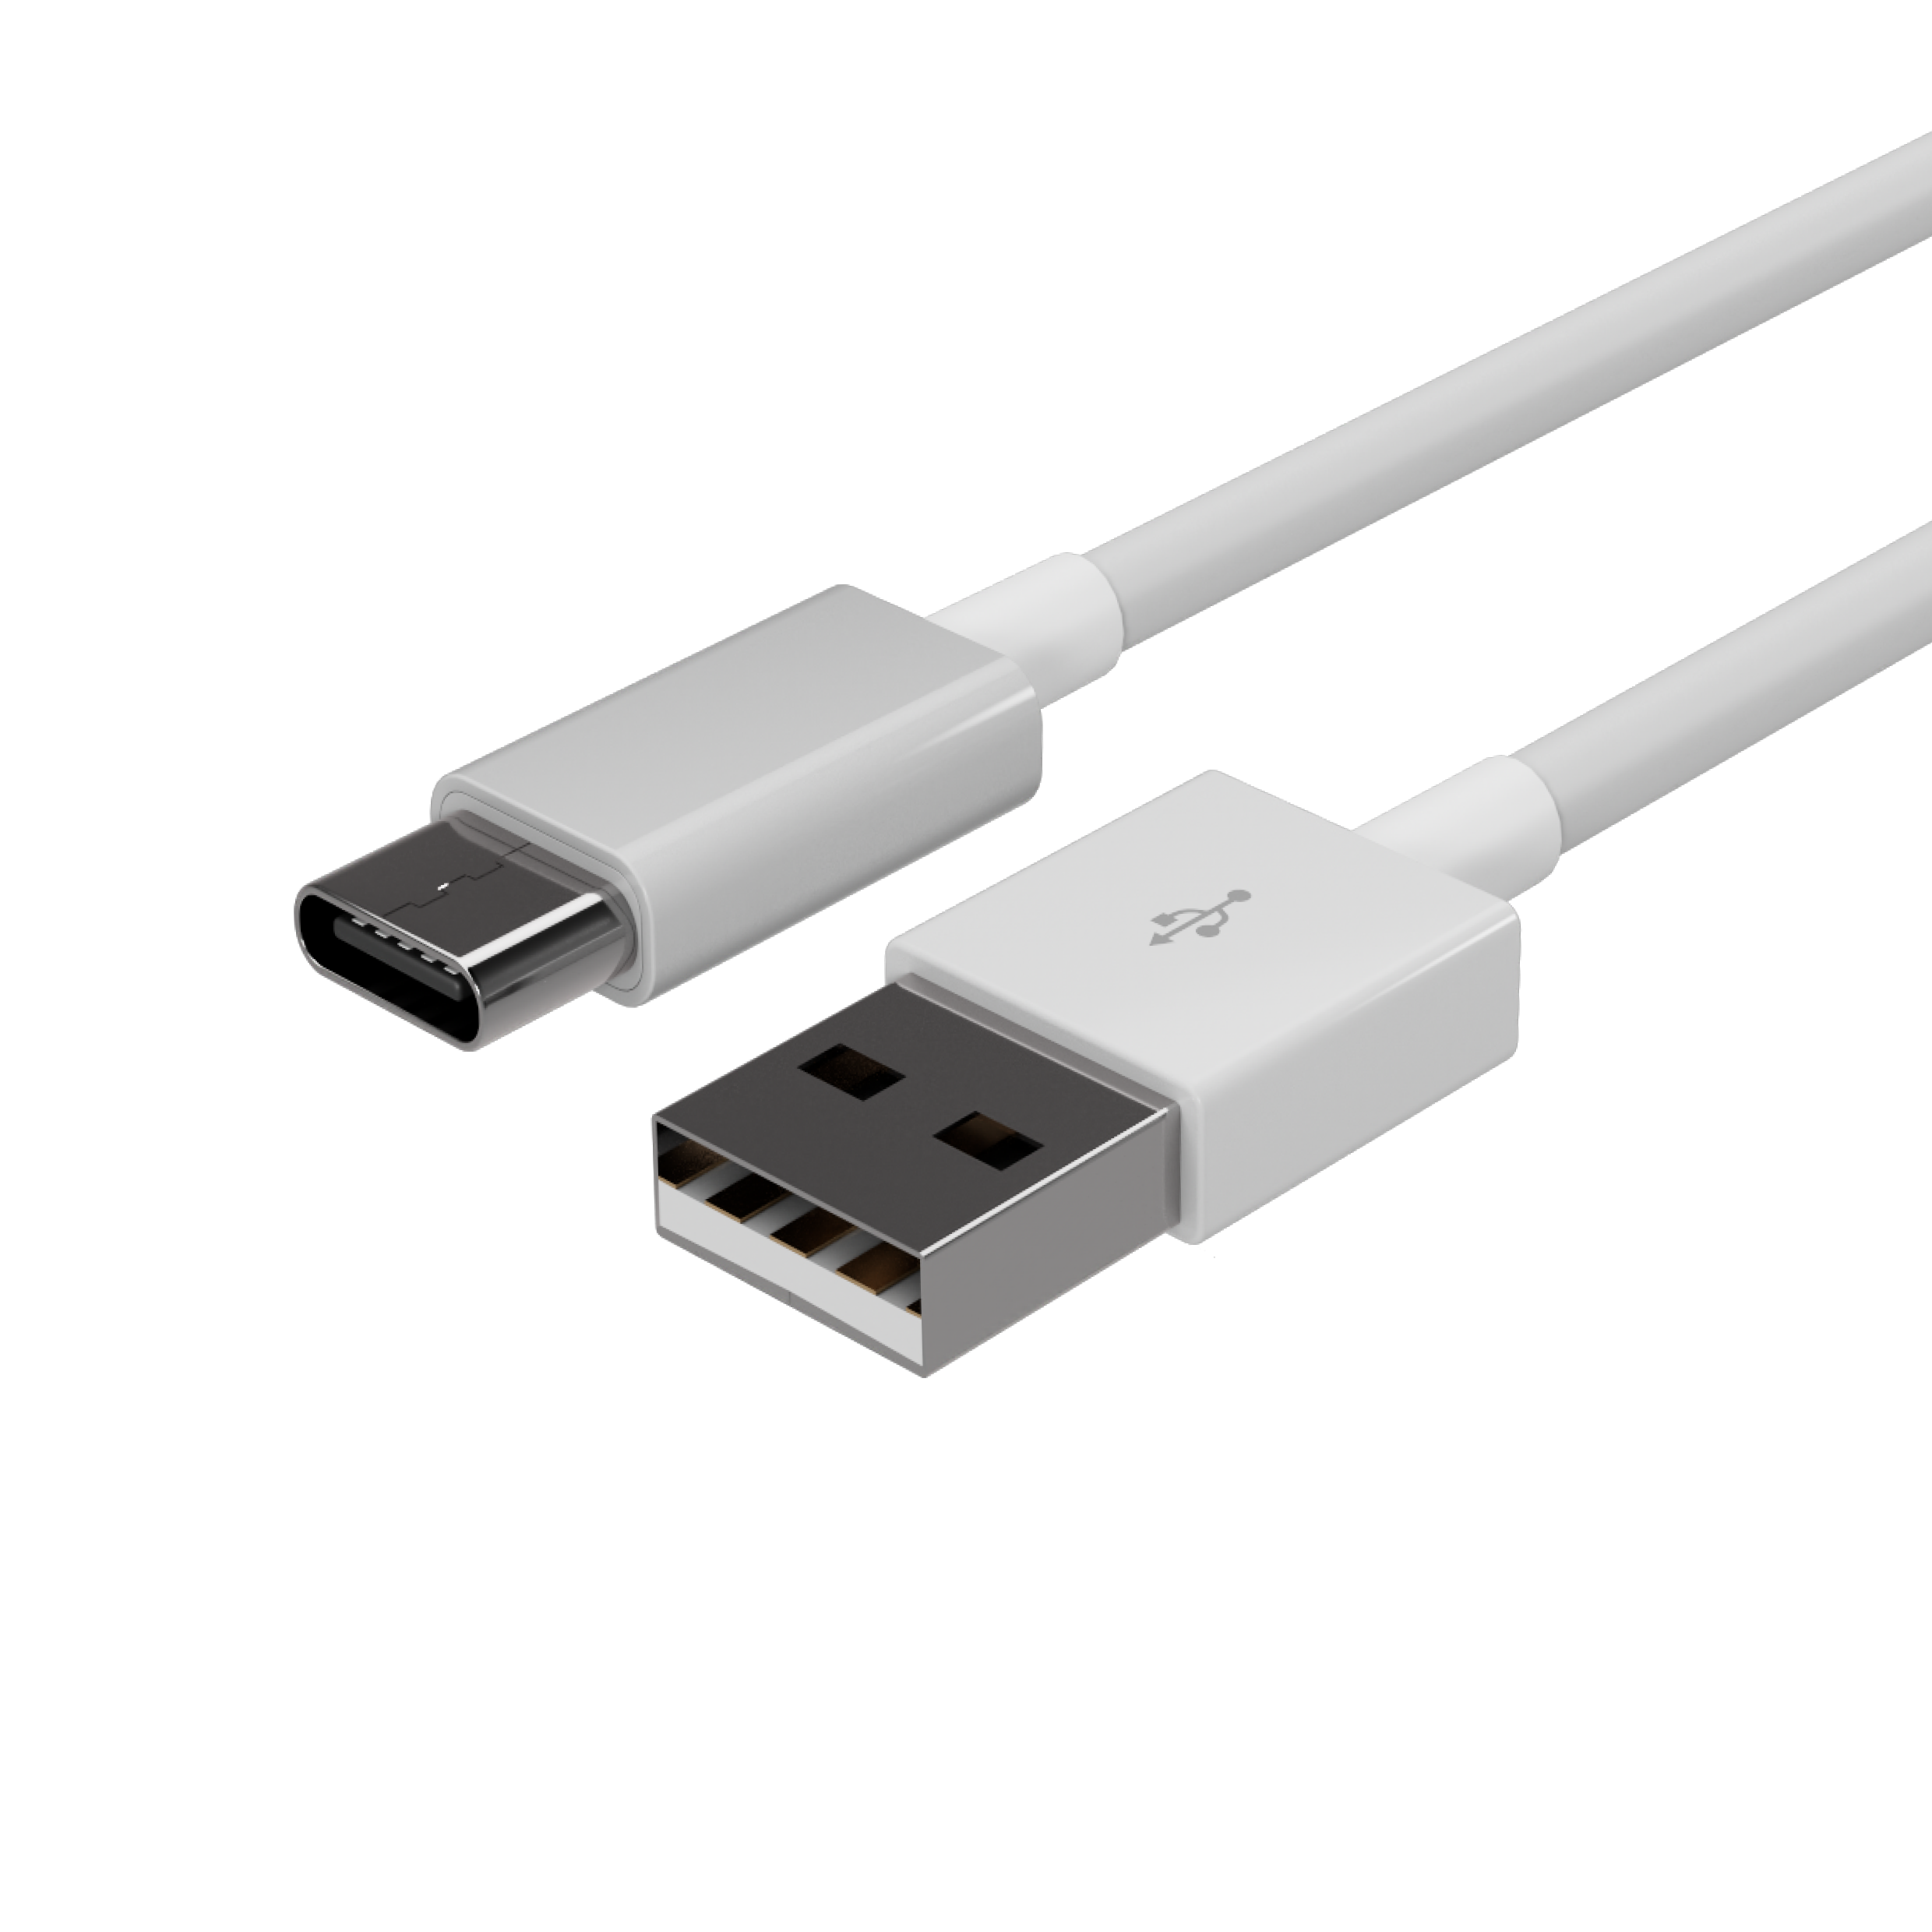 Flexline USB Kabel, USB-A Stecker auf USB-C Stecker, 2.0, ABS, weiß